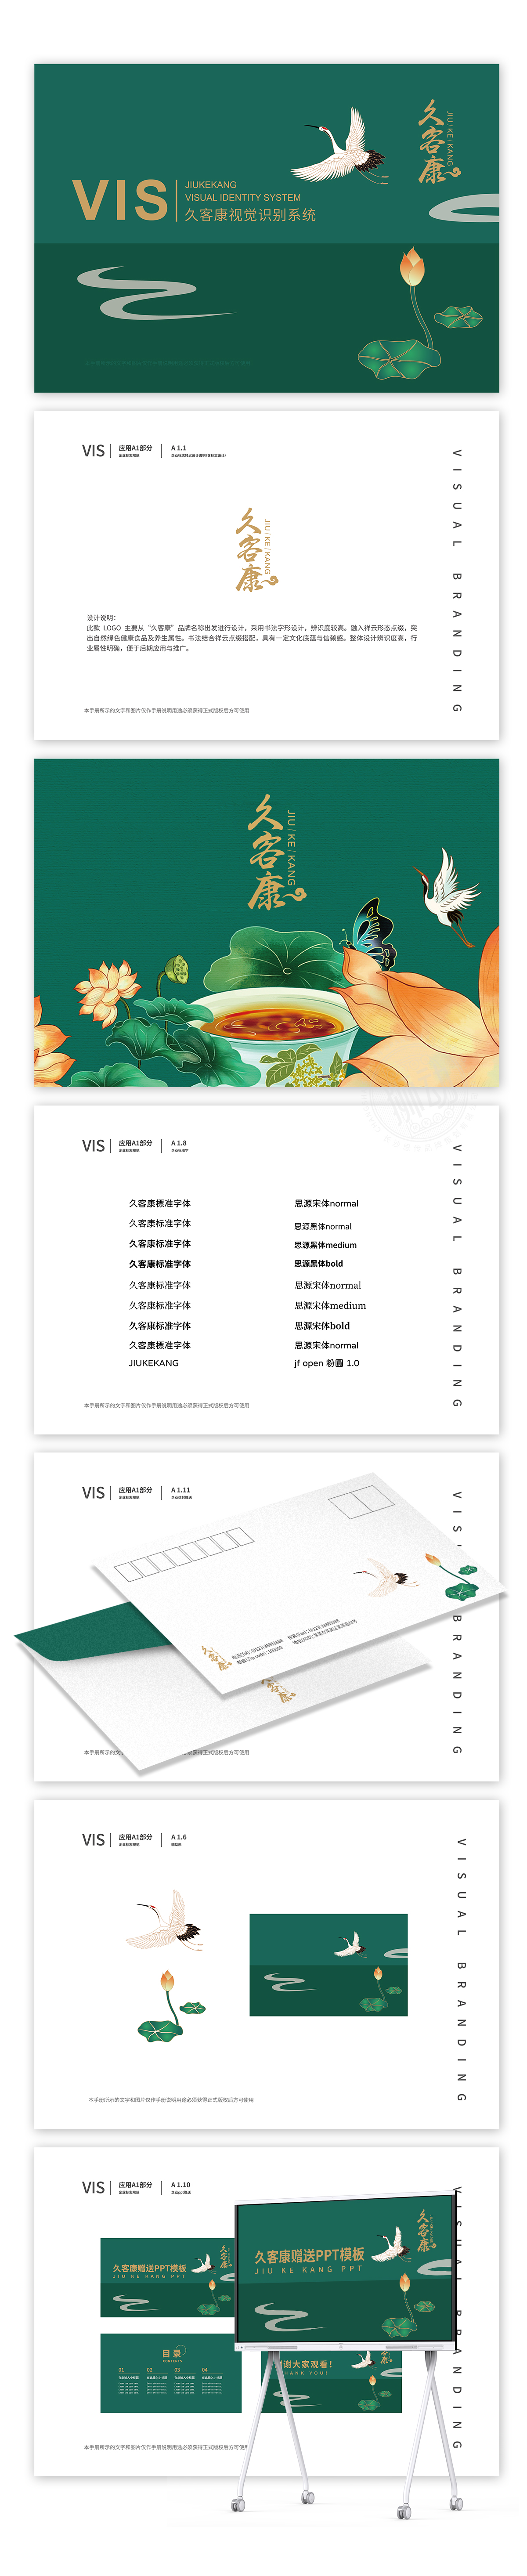 久客康链子薏仁米logo包装设计